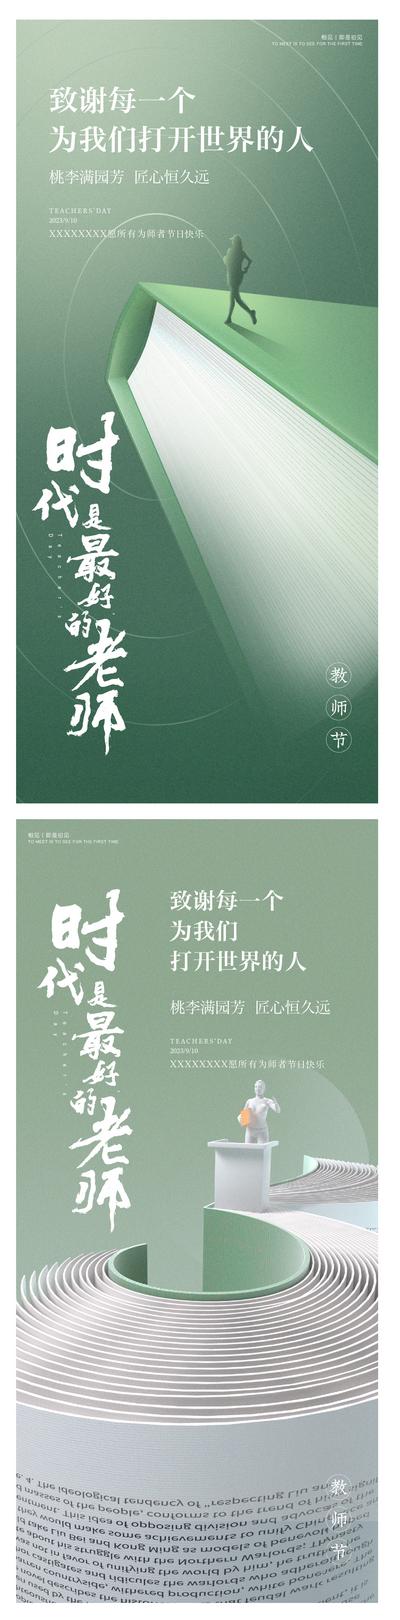 南门网 海报 公历节日 教师节 书本 人物剪影 创意